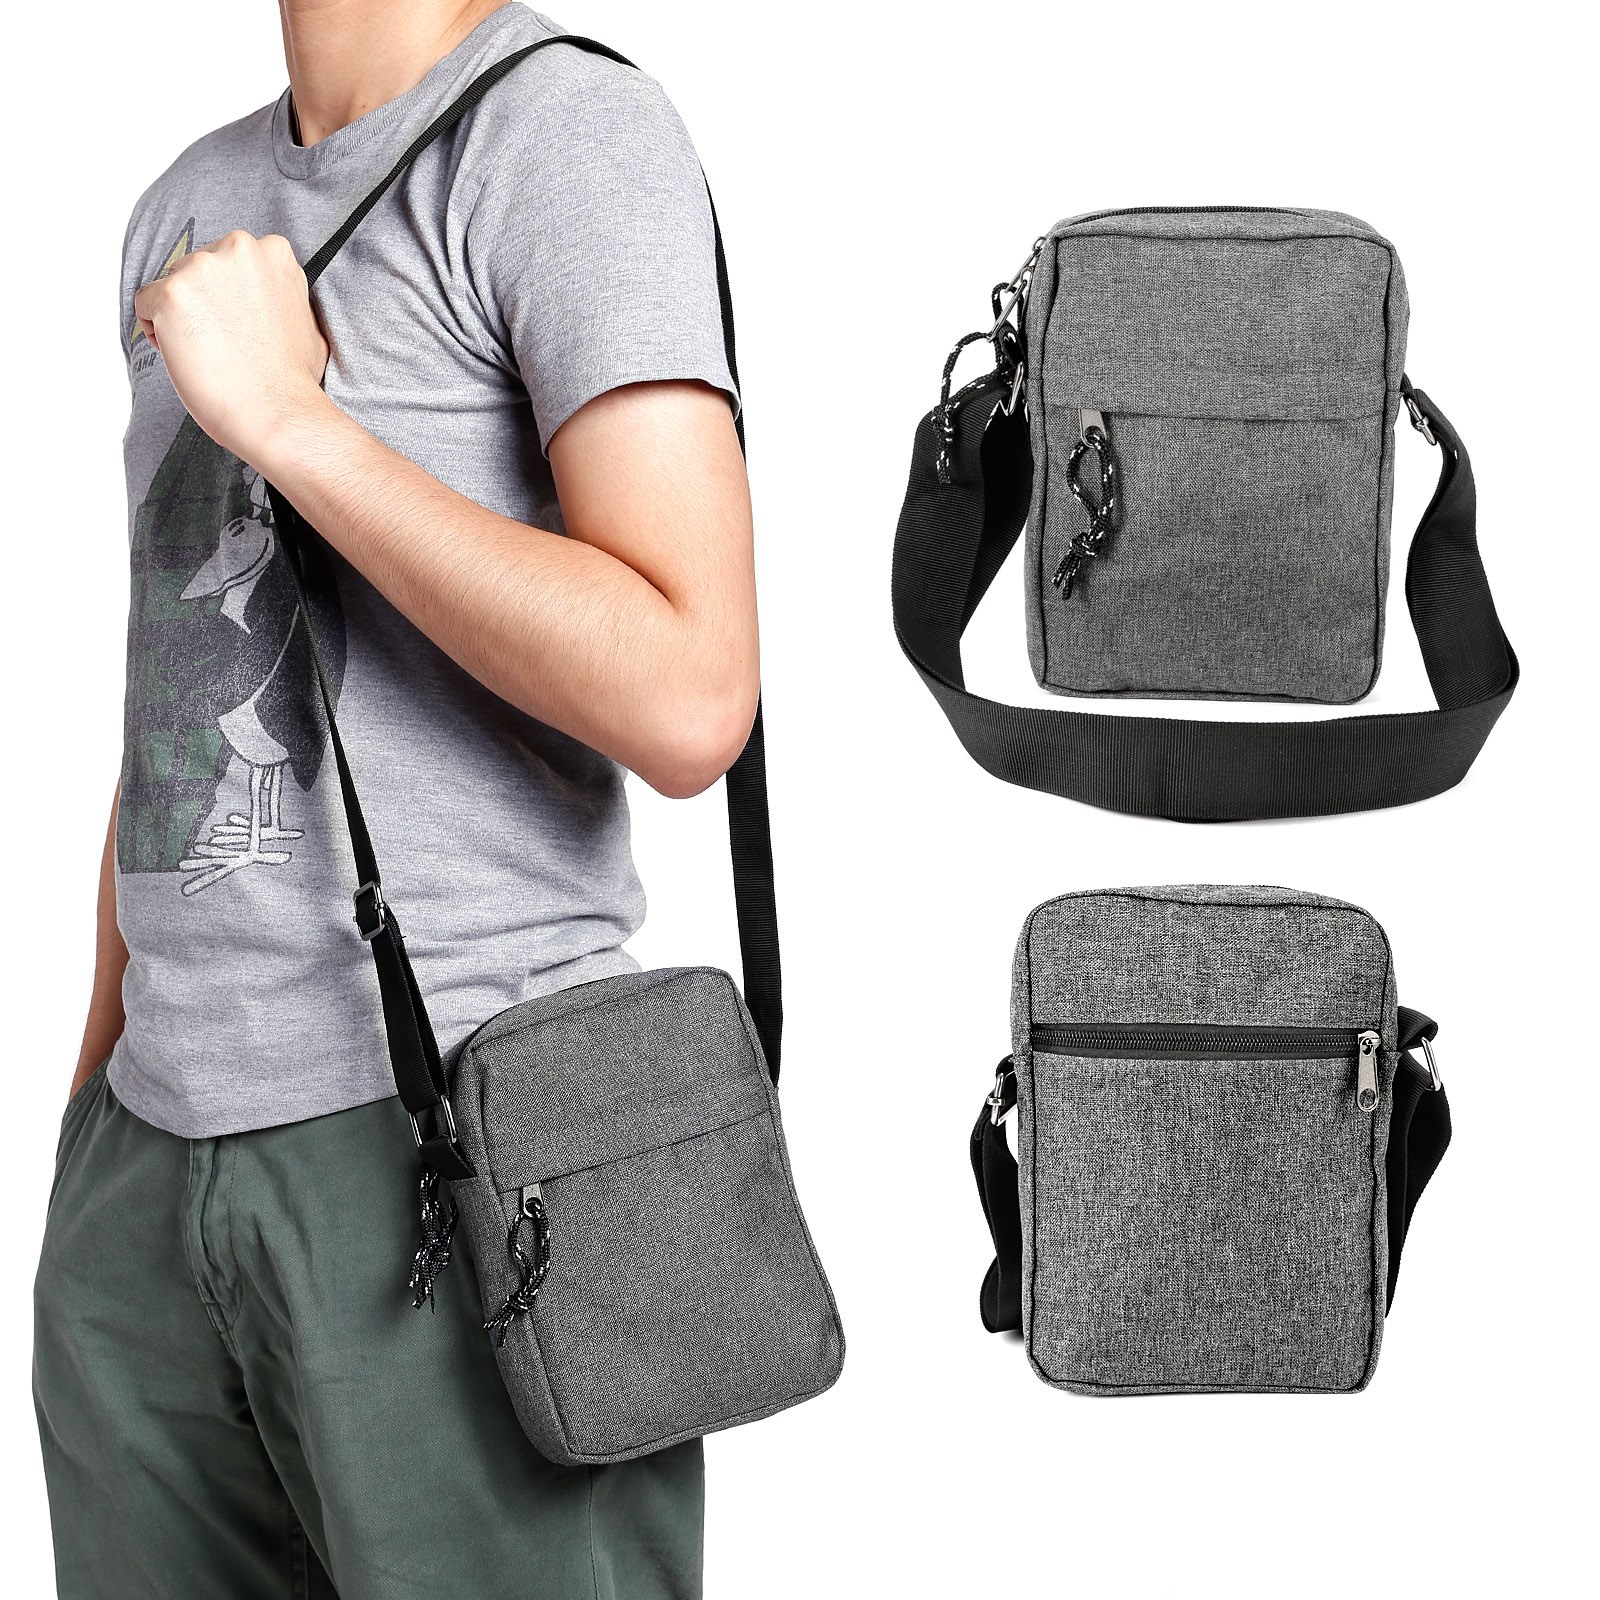 travel shoulder bag for man